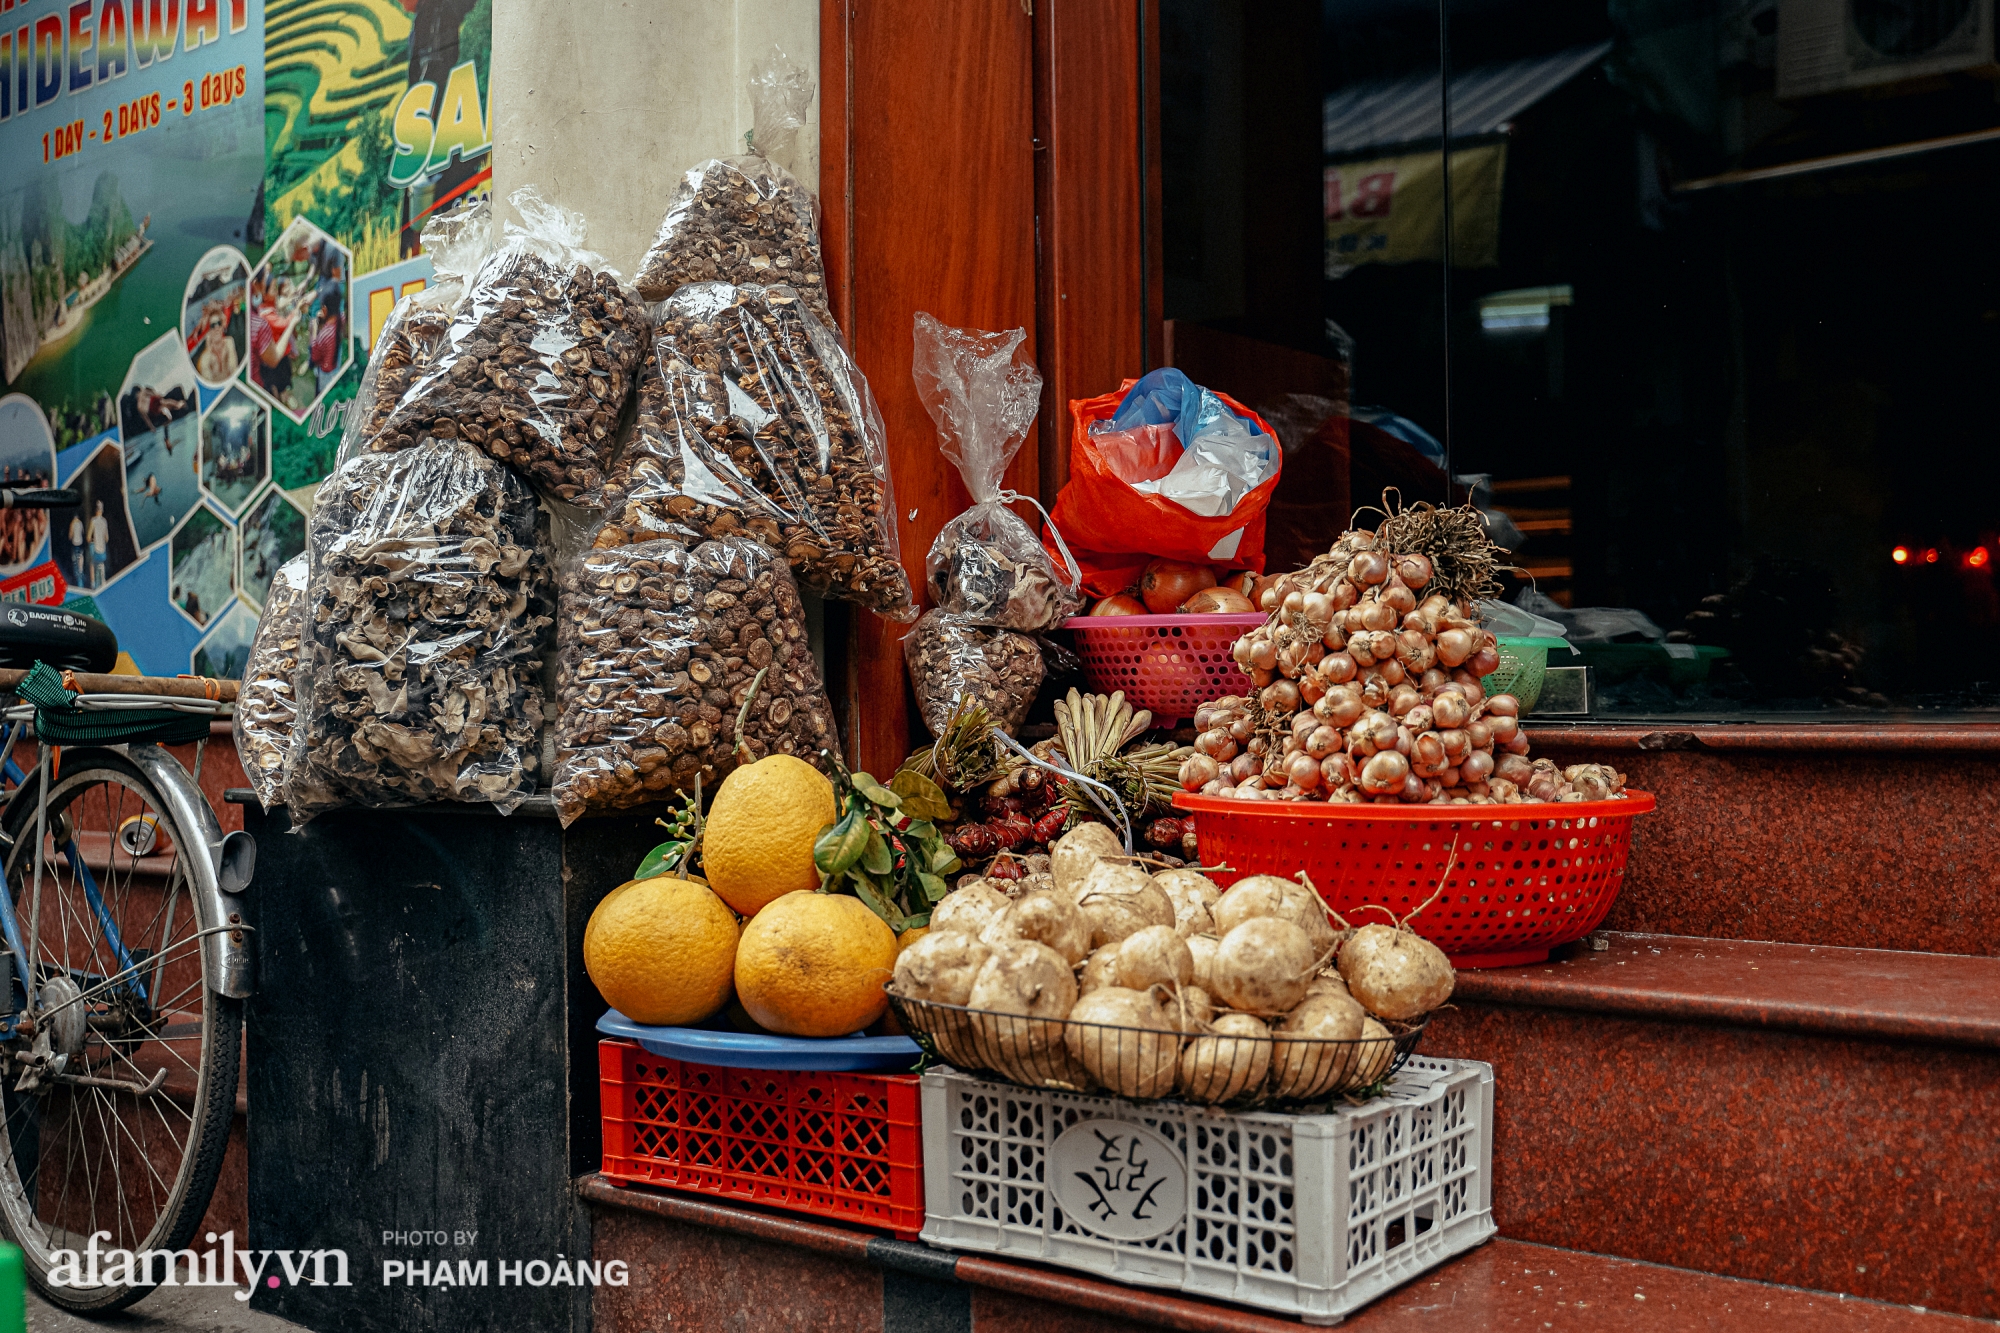 Ngày cuối năm bình yên trong ngõ chợ Thanh Hà - ngôi chợ lâu đời nhất phố cổ được giới nhà giàu chuộng mua vì toàn đồ chất lượng tươi ngon - Ảnh 12.